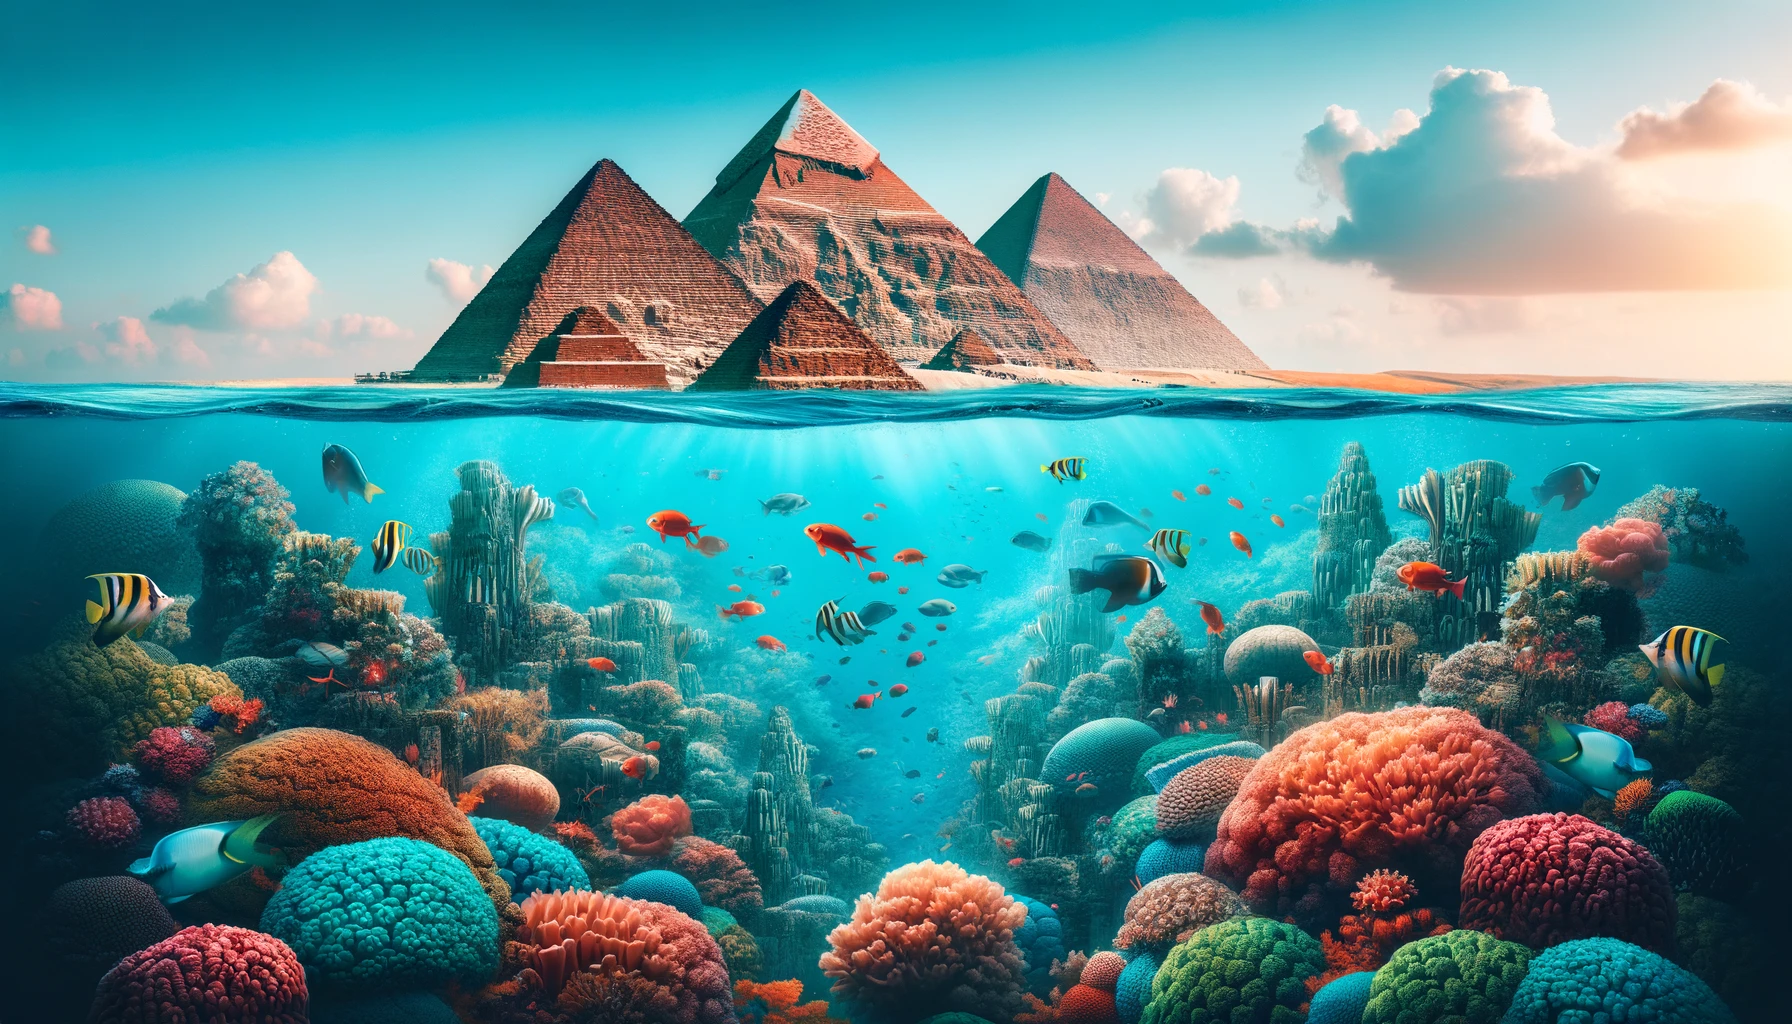 Wielkie Piramidy Gizy z widokiem na kolorowy podwodny świat Morza Czerwonego